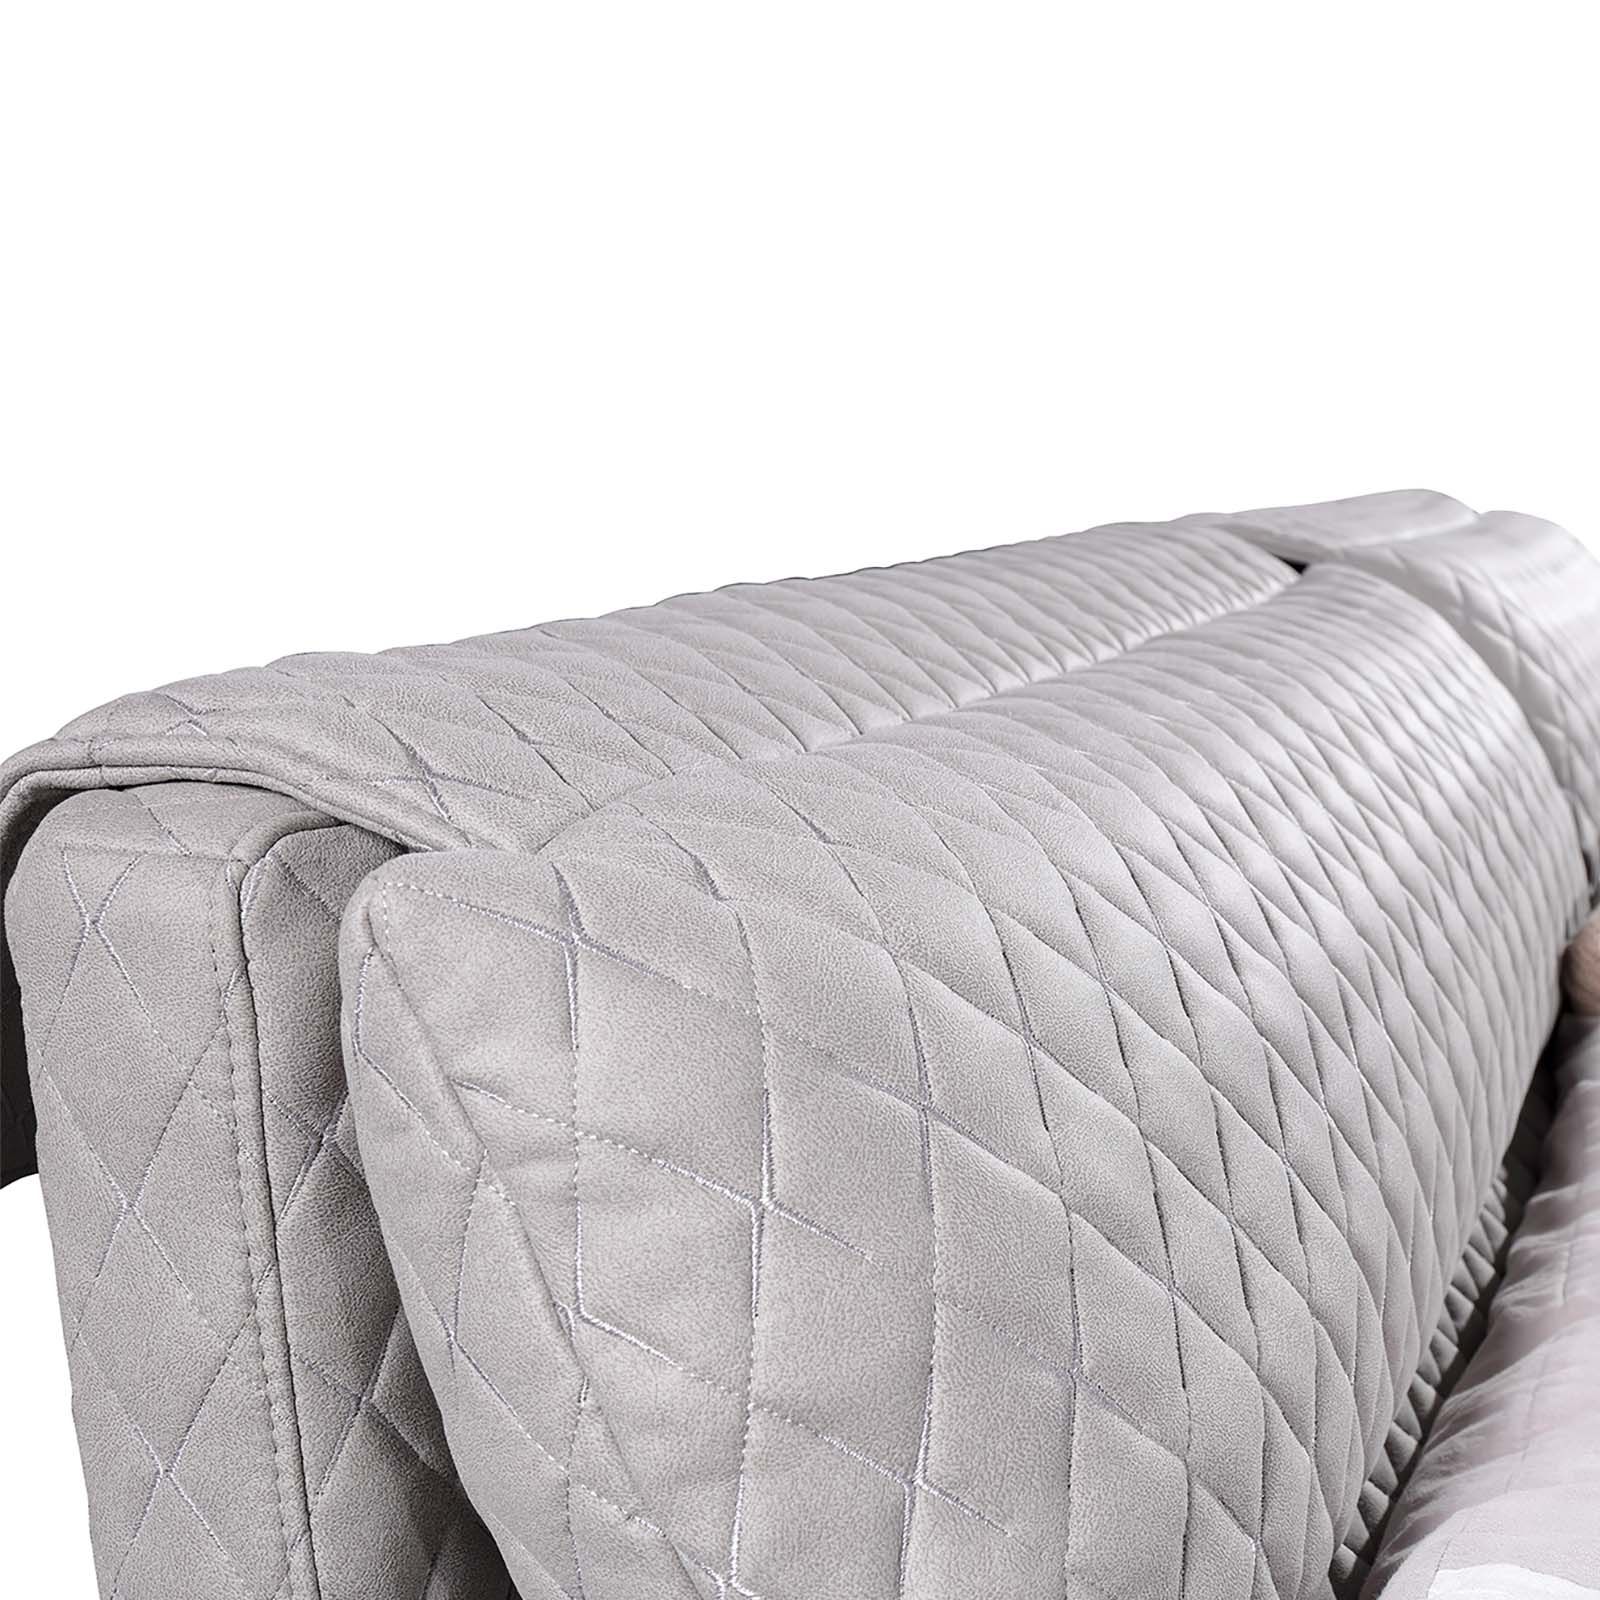 BONN | Cama tapizada con tejido acolchado gris claro (180 x 200 cm)